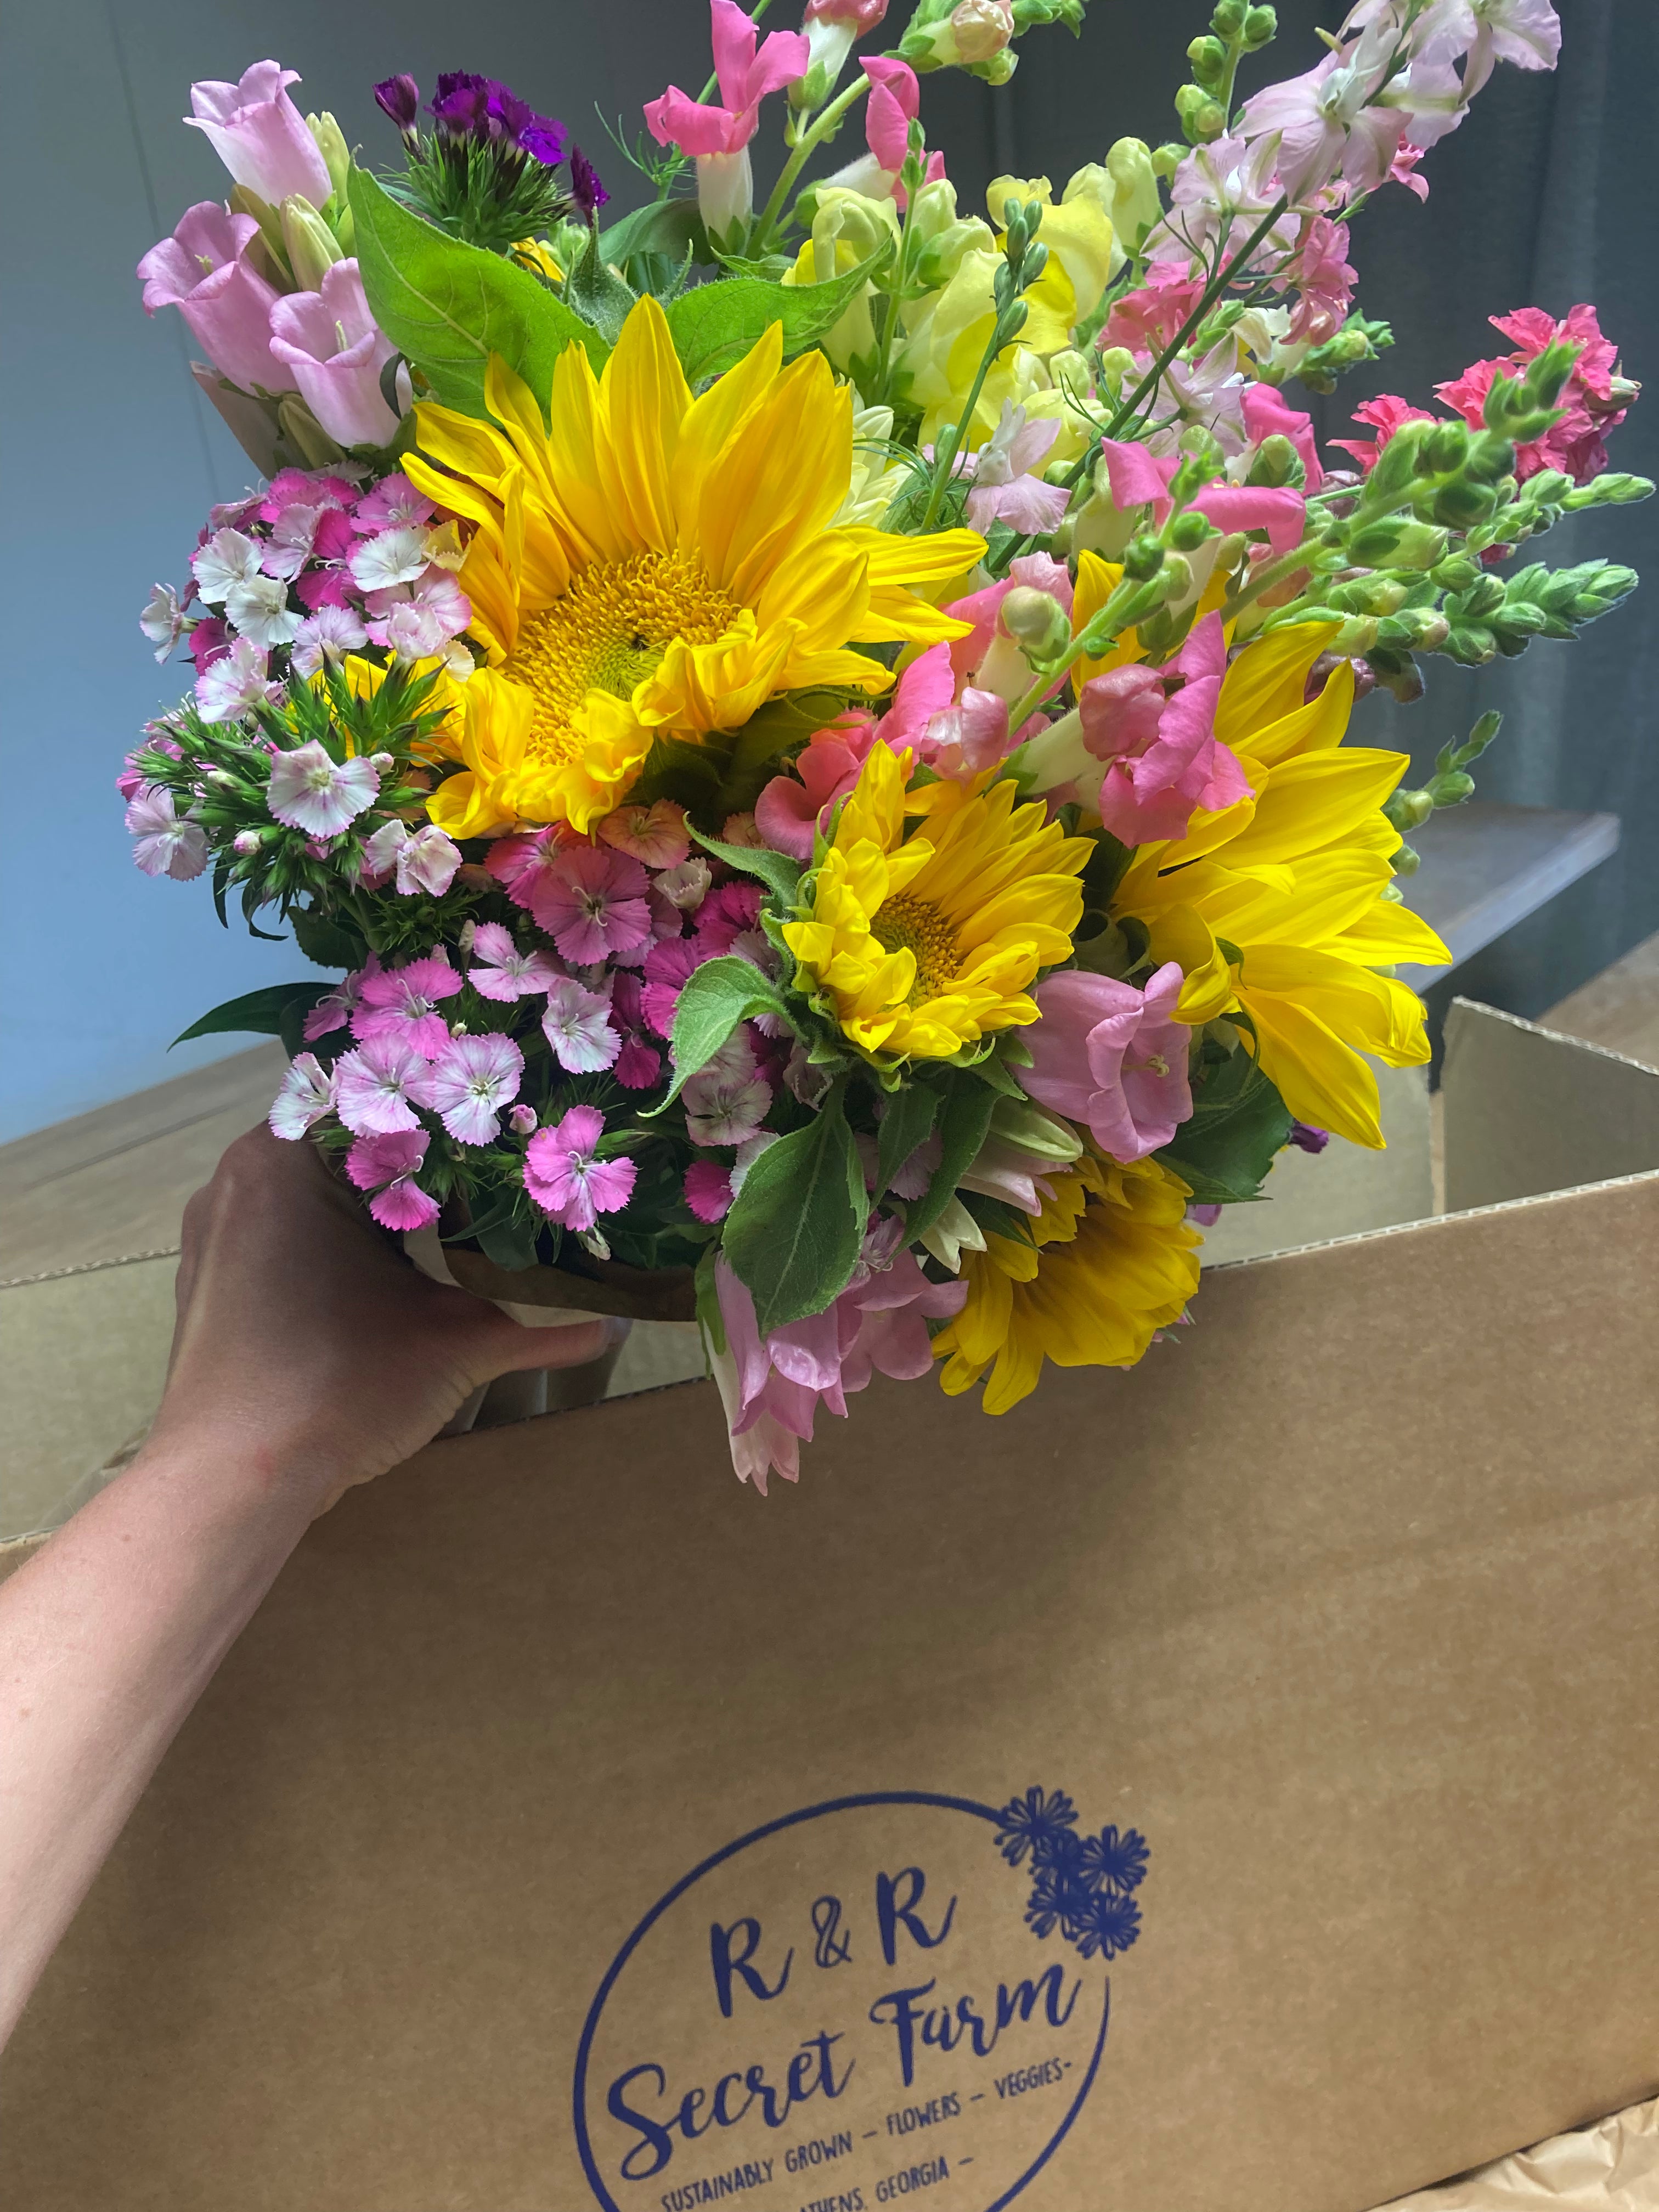 Mixed Seasonal Bouquet For Overnight FedEx Shipping R&R Secret Farm Local Organic Farm In Athens, GA 